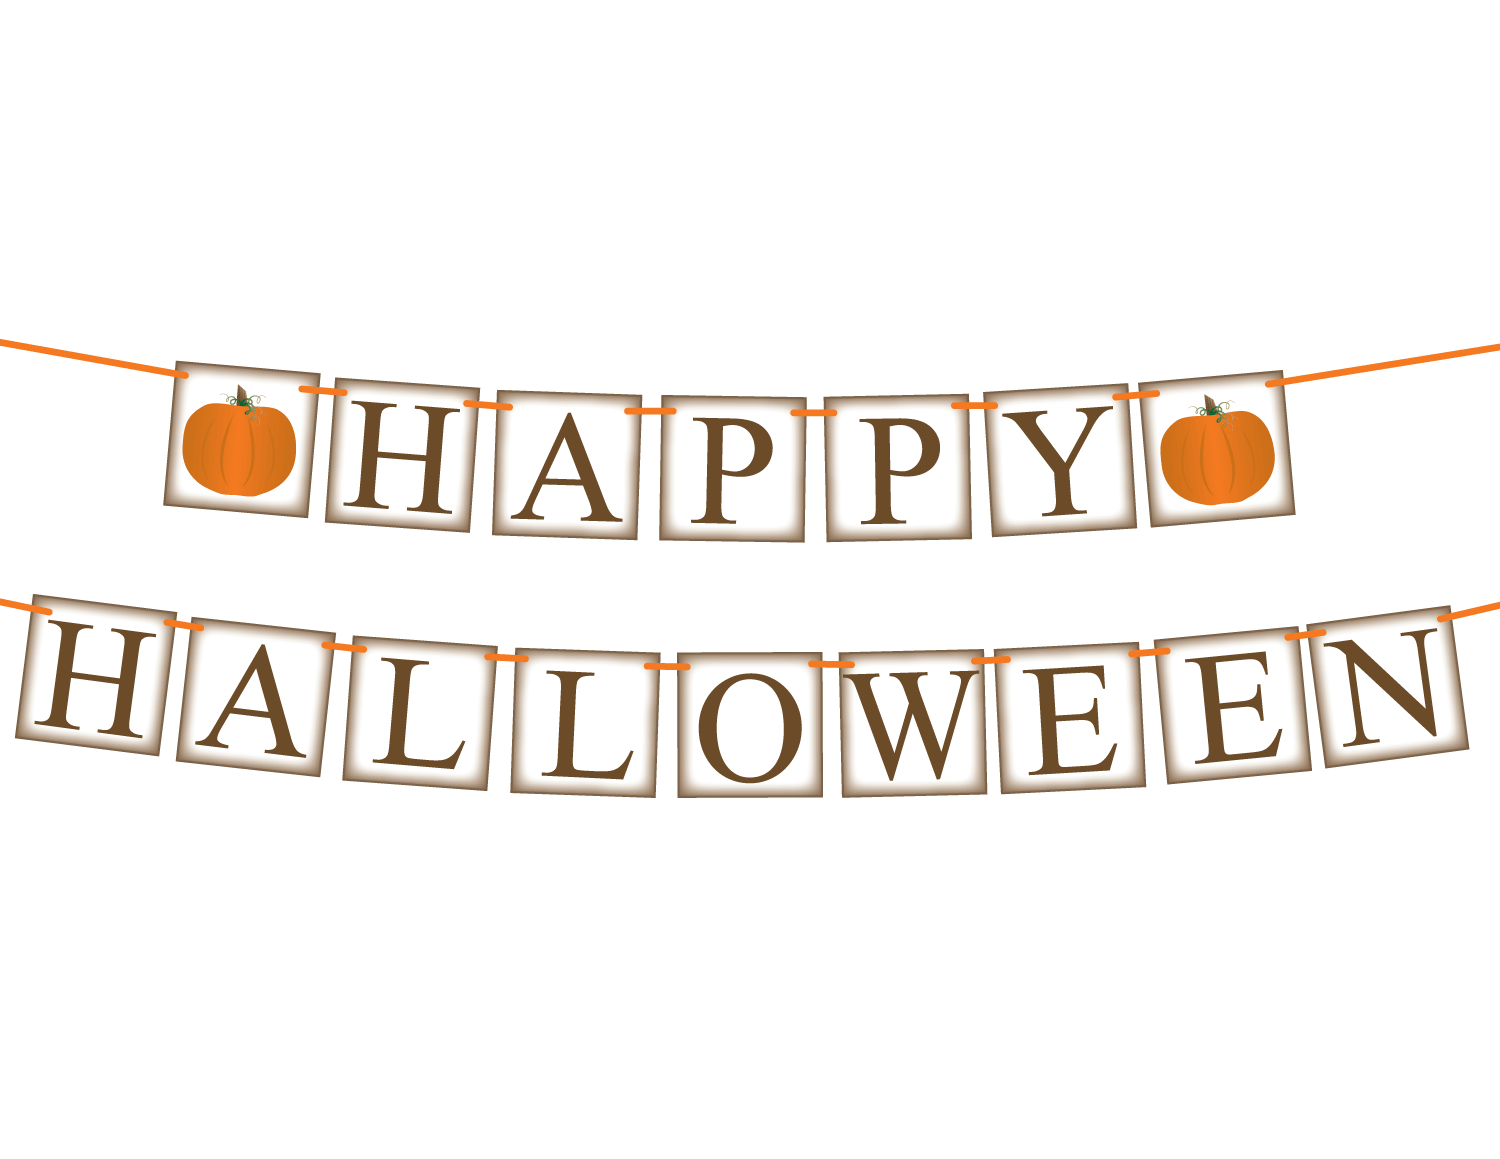 DIY happy halloween banner - Celebrating Together